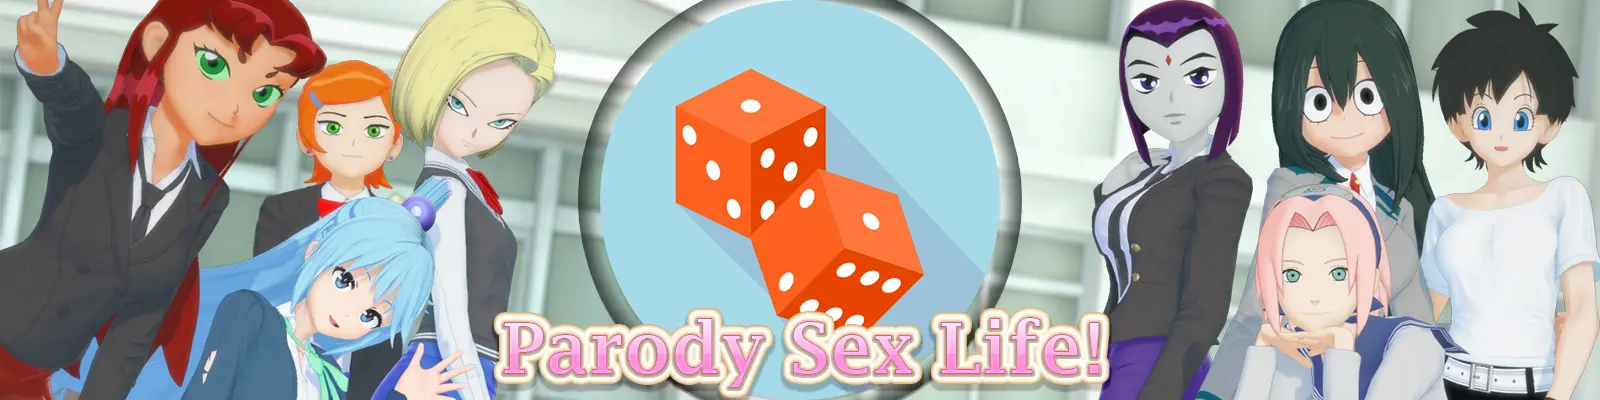 Parody Sex Life main image